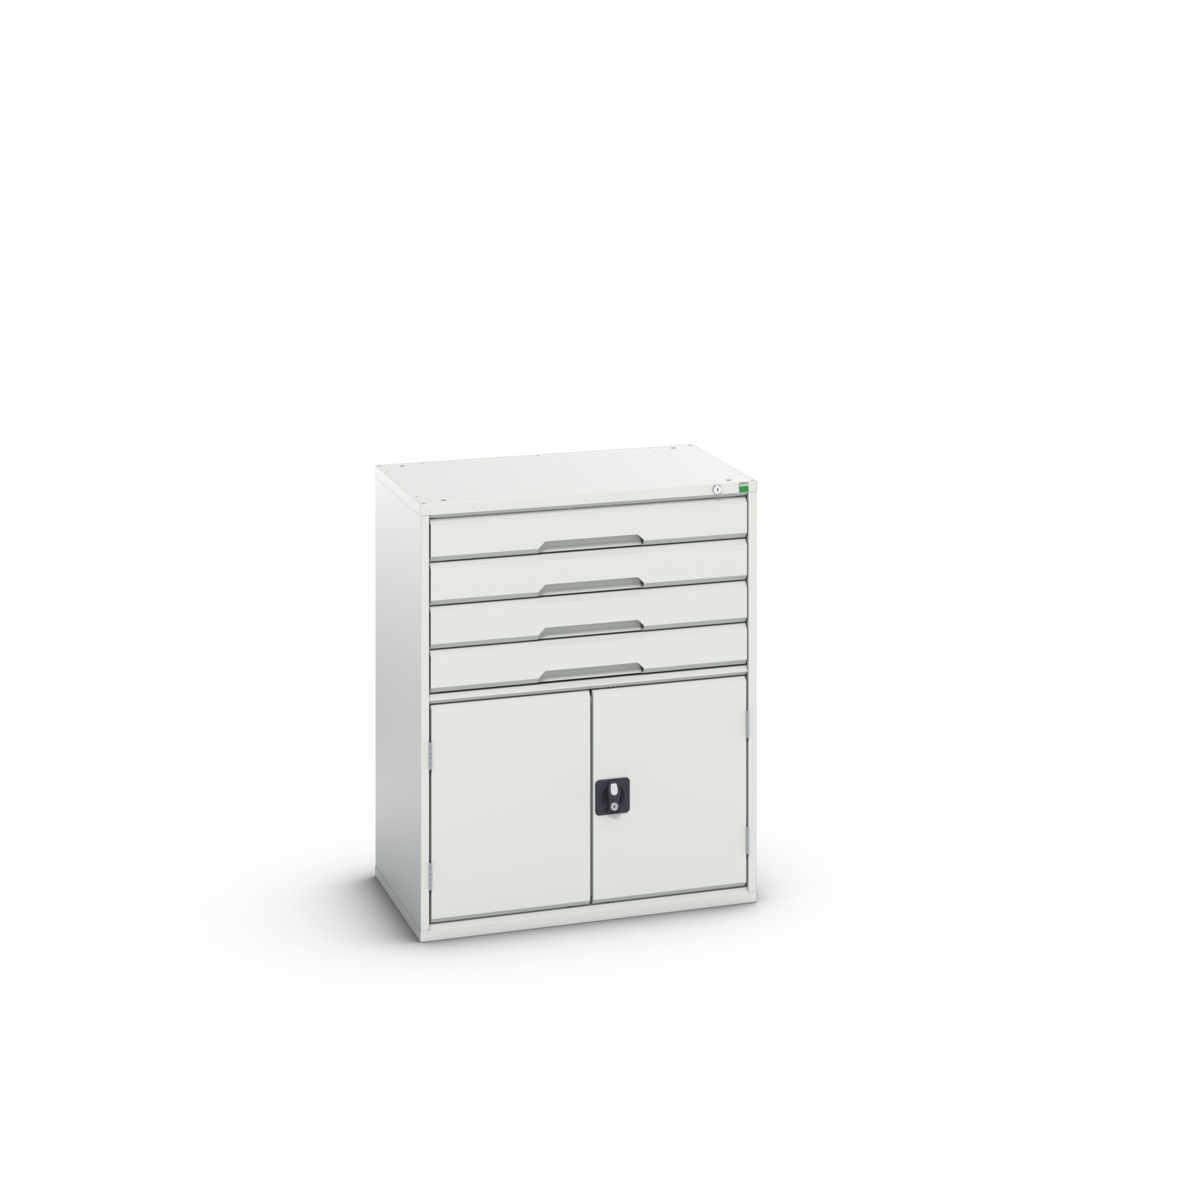 16925165.16 - verso drawer-door cabinet